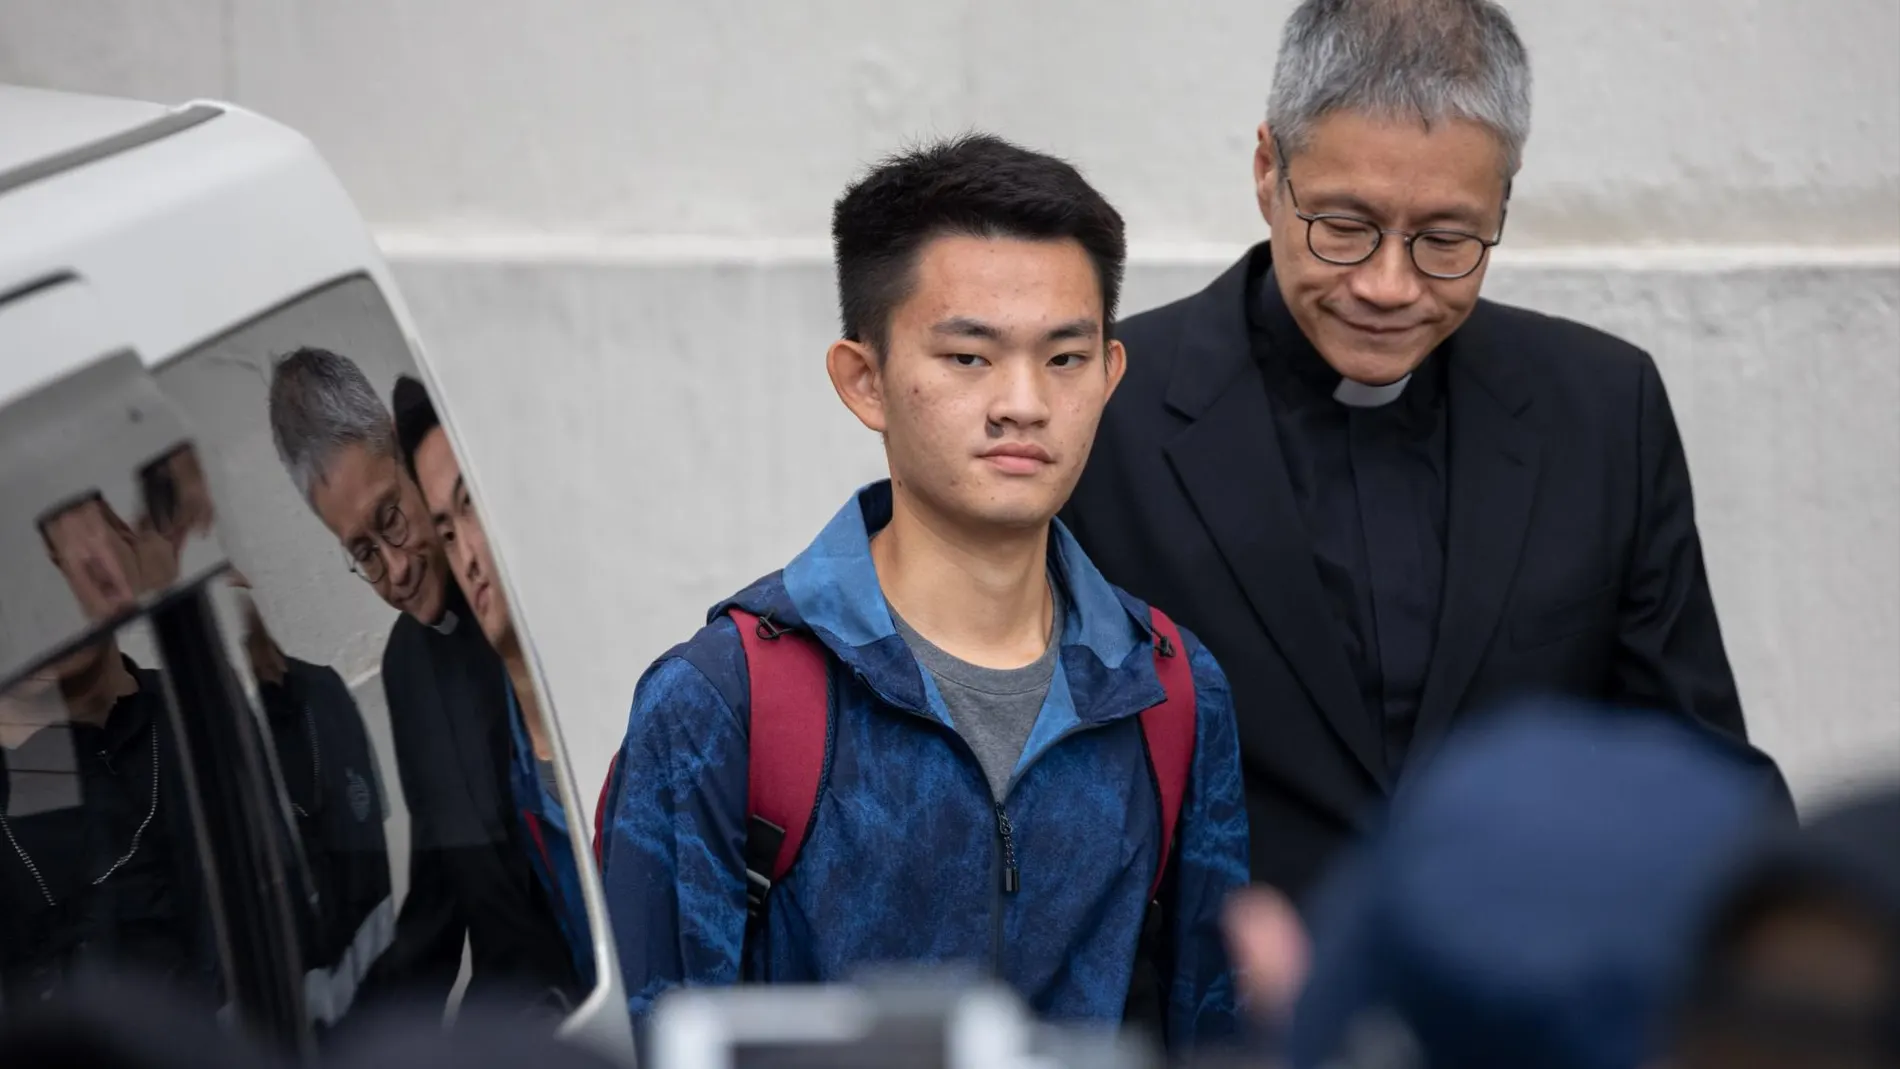 El presunto asesino Chan tong kai sale de prisión acompañado del pastor anglicano Peter Koon / EFE